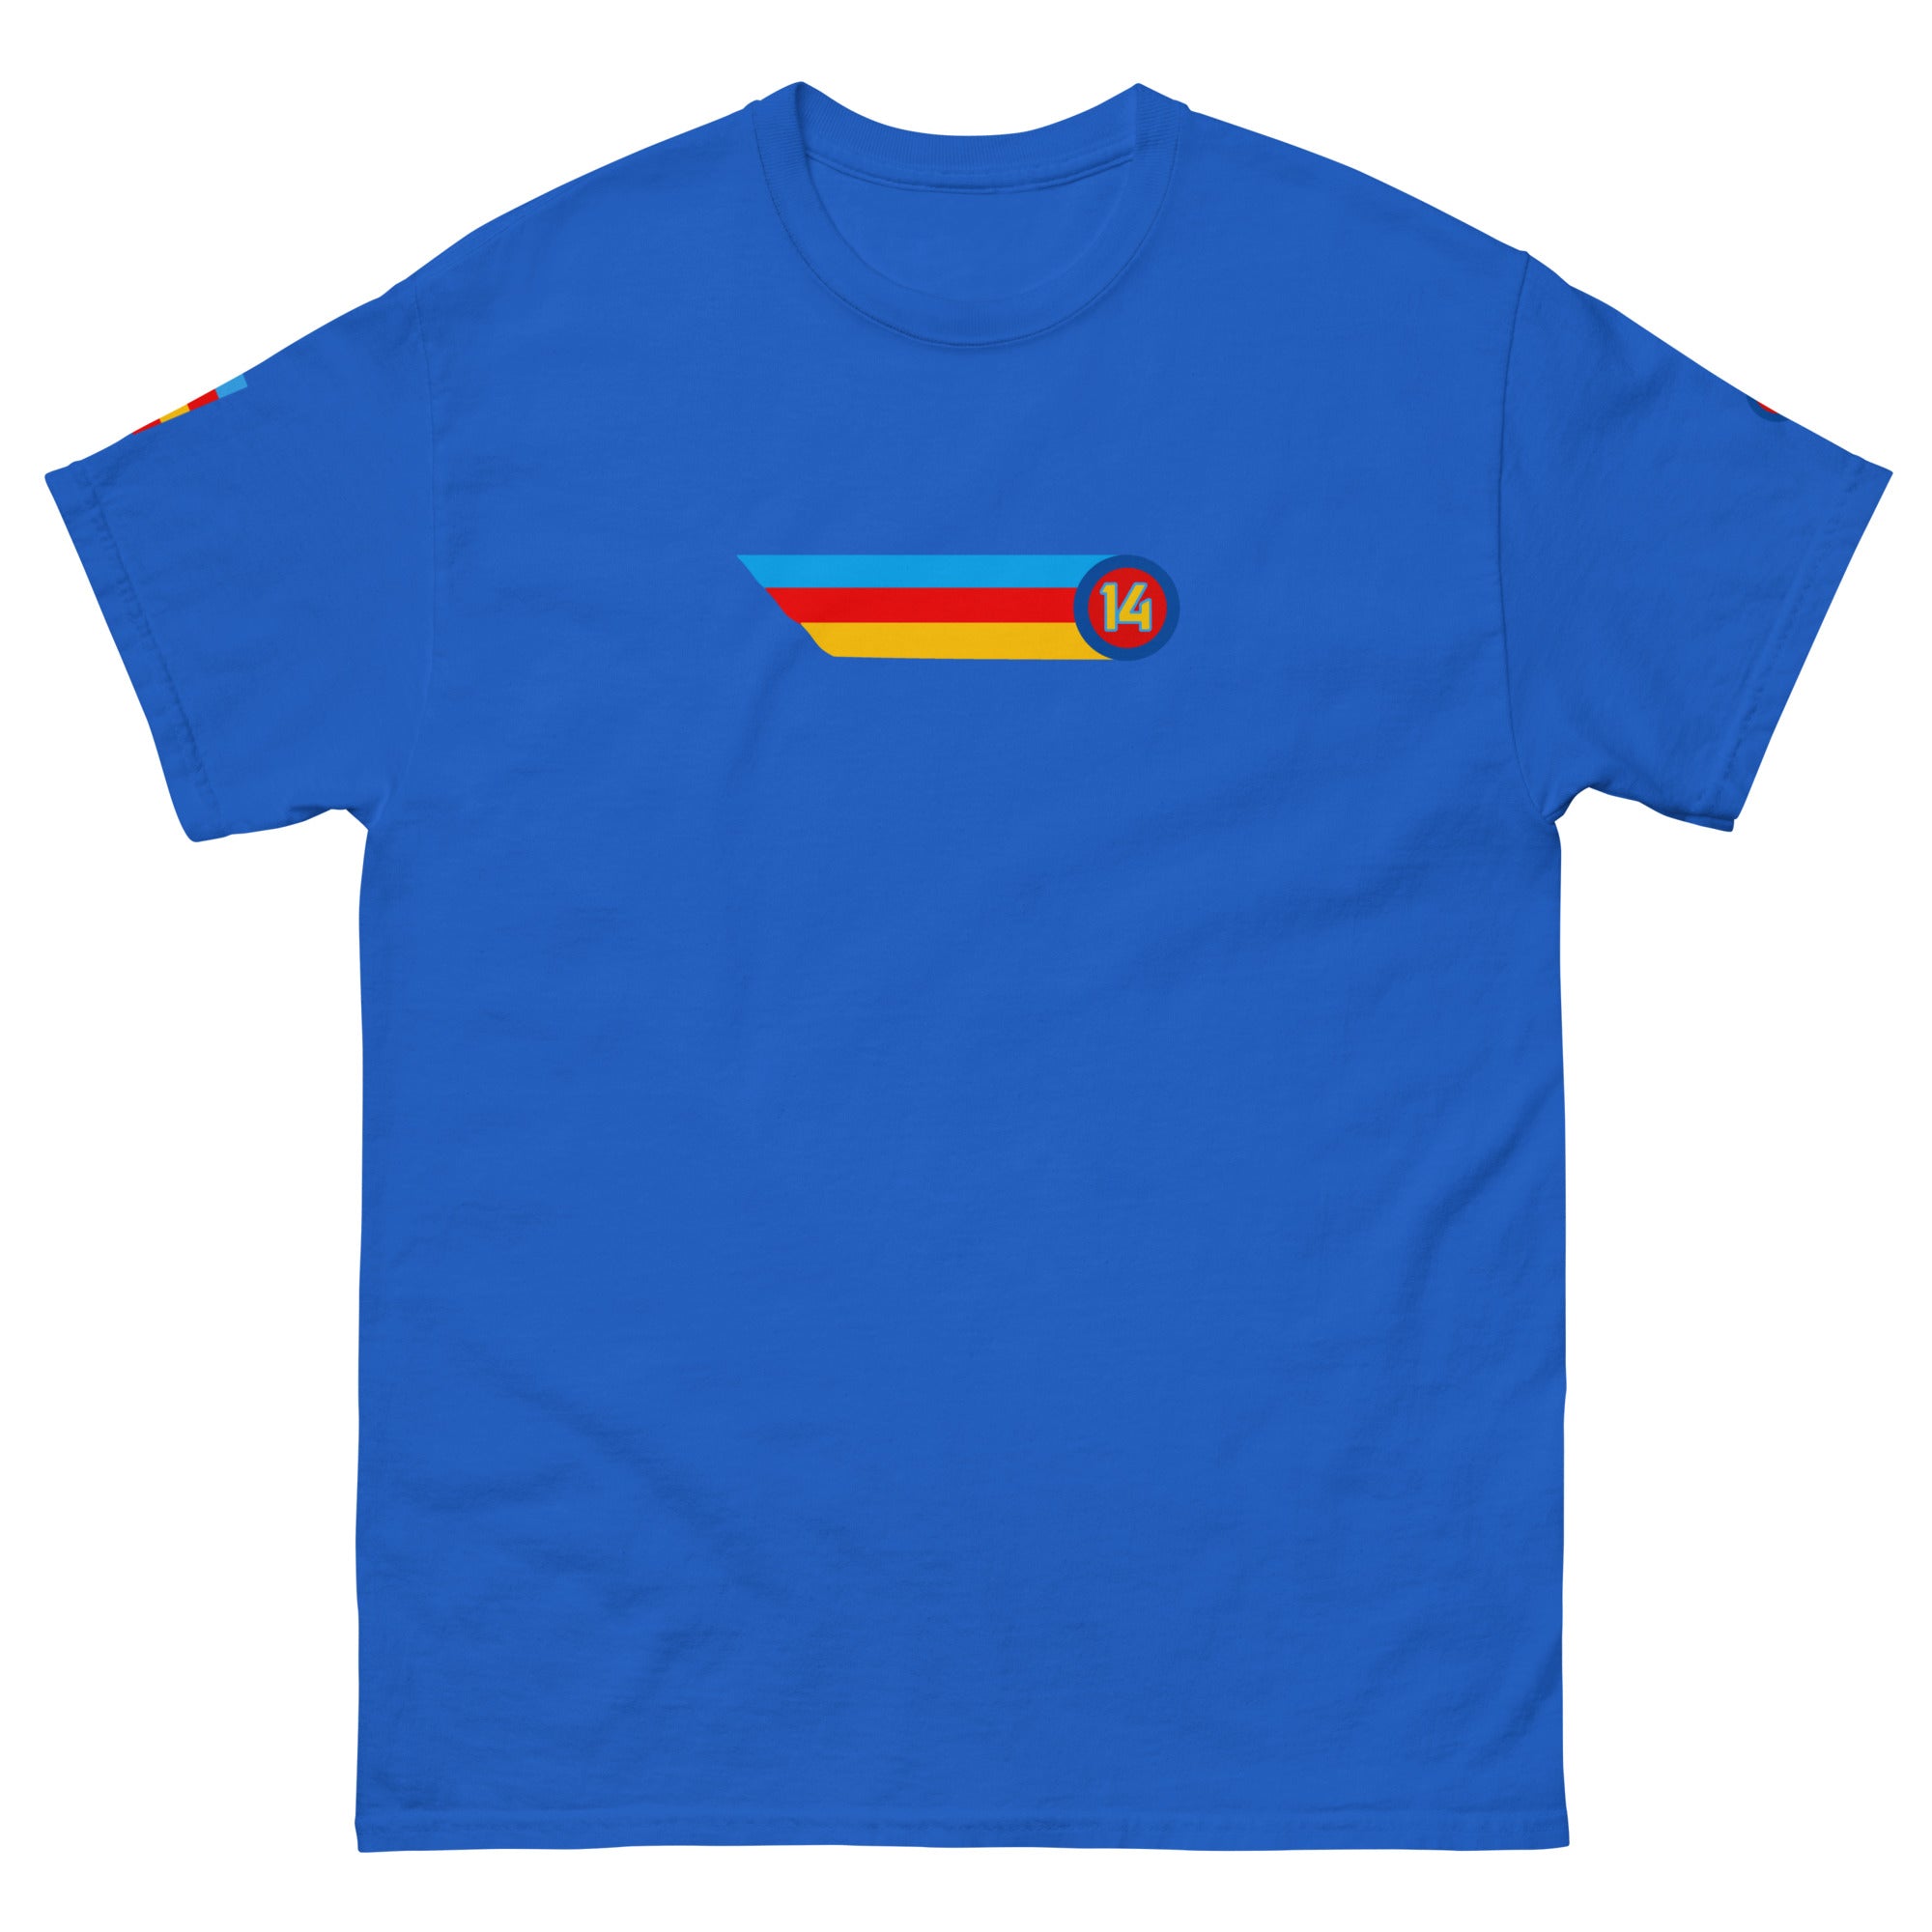 14: Fernando Alonso Farewell  T-Shirt mclaren ferrari alpine blue front left side